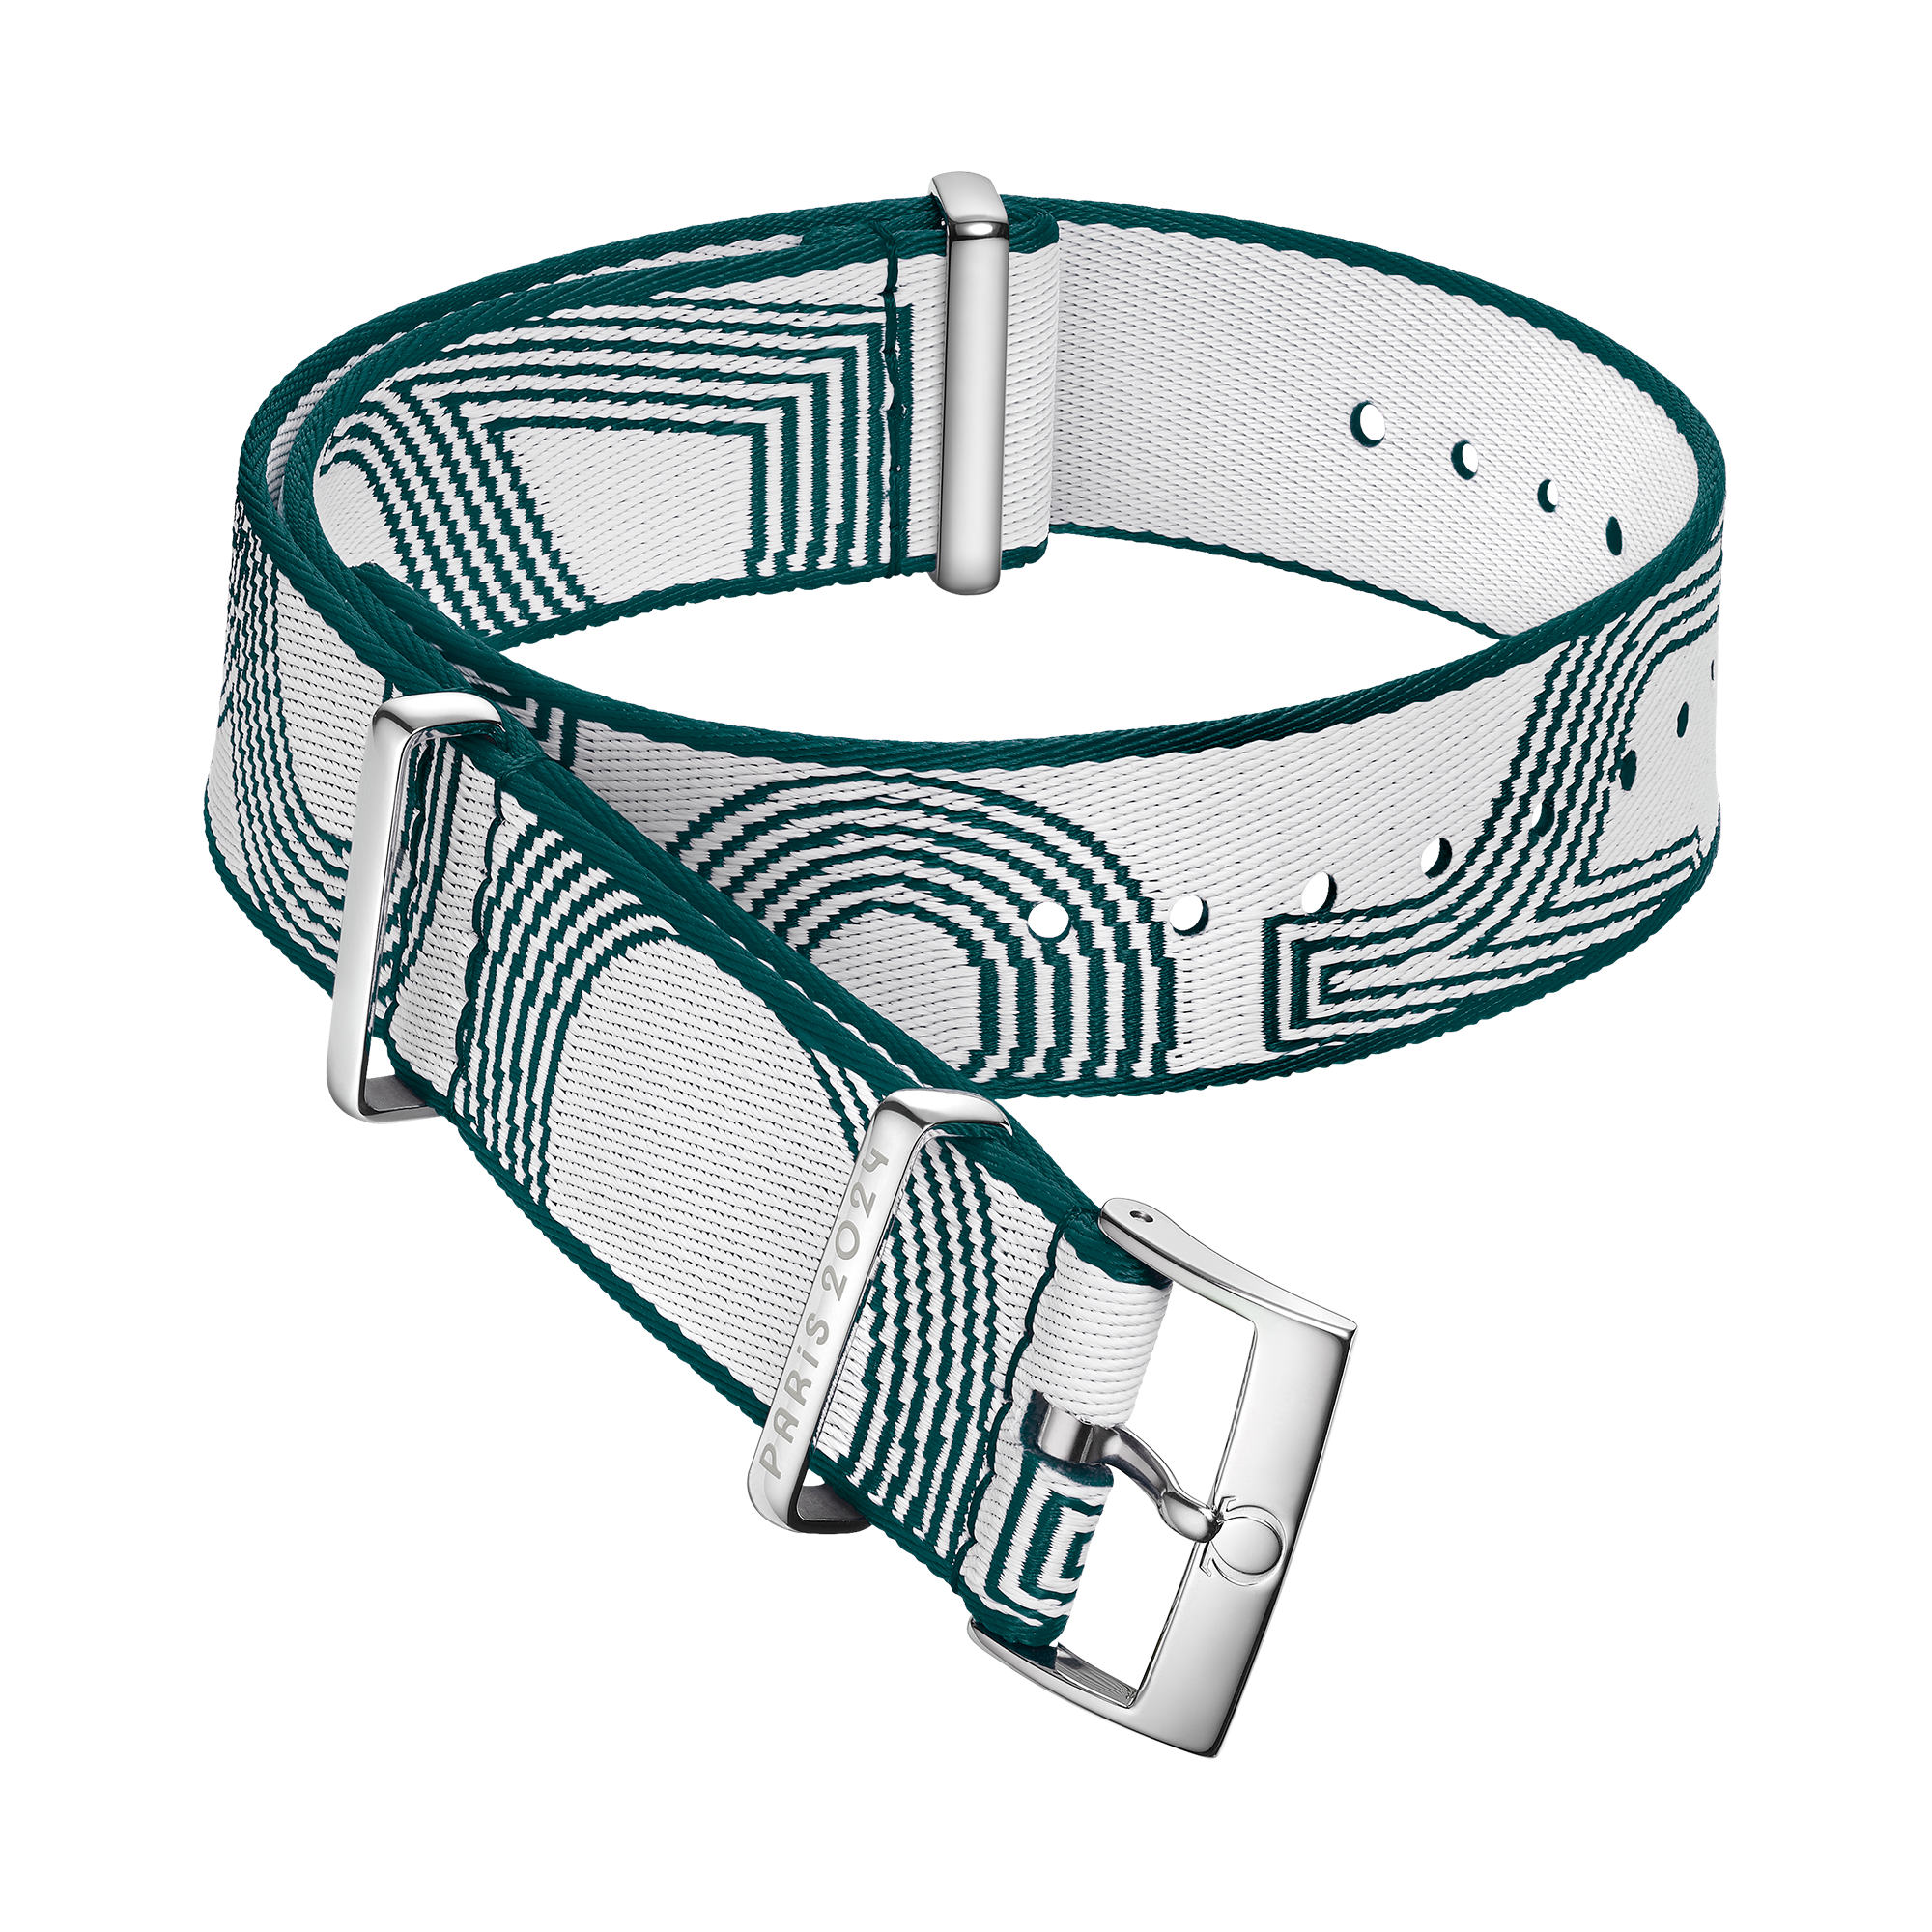 Bracelete NATO - Bracelete em poliamida branca e verde - 031Z019140